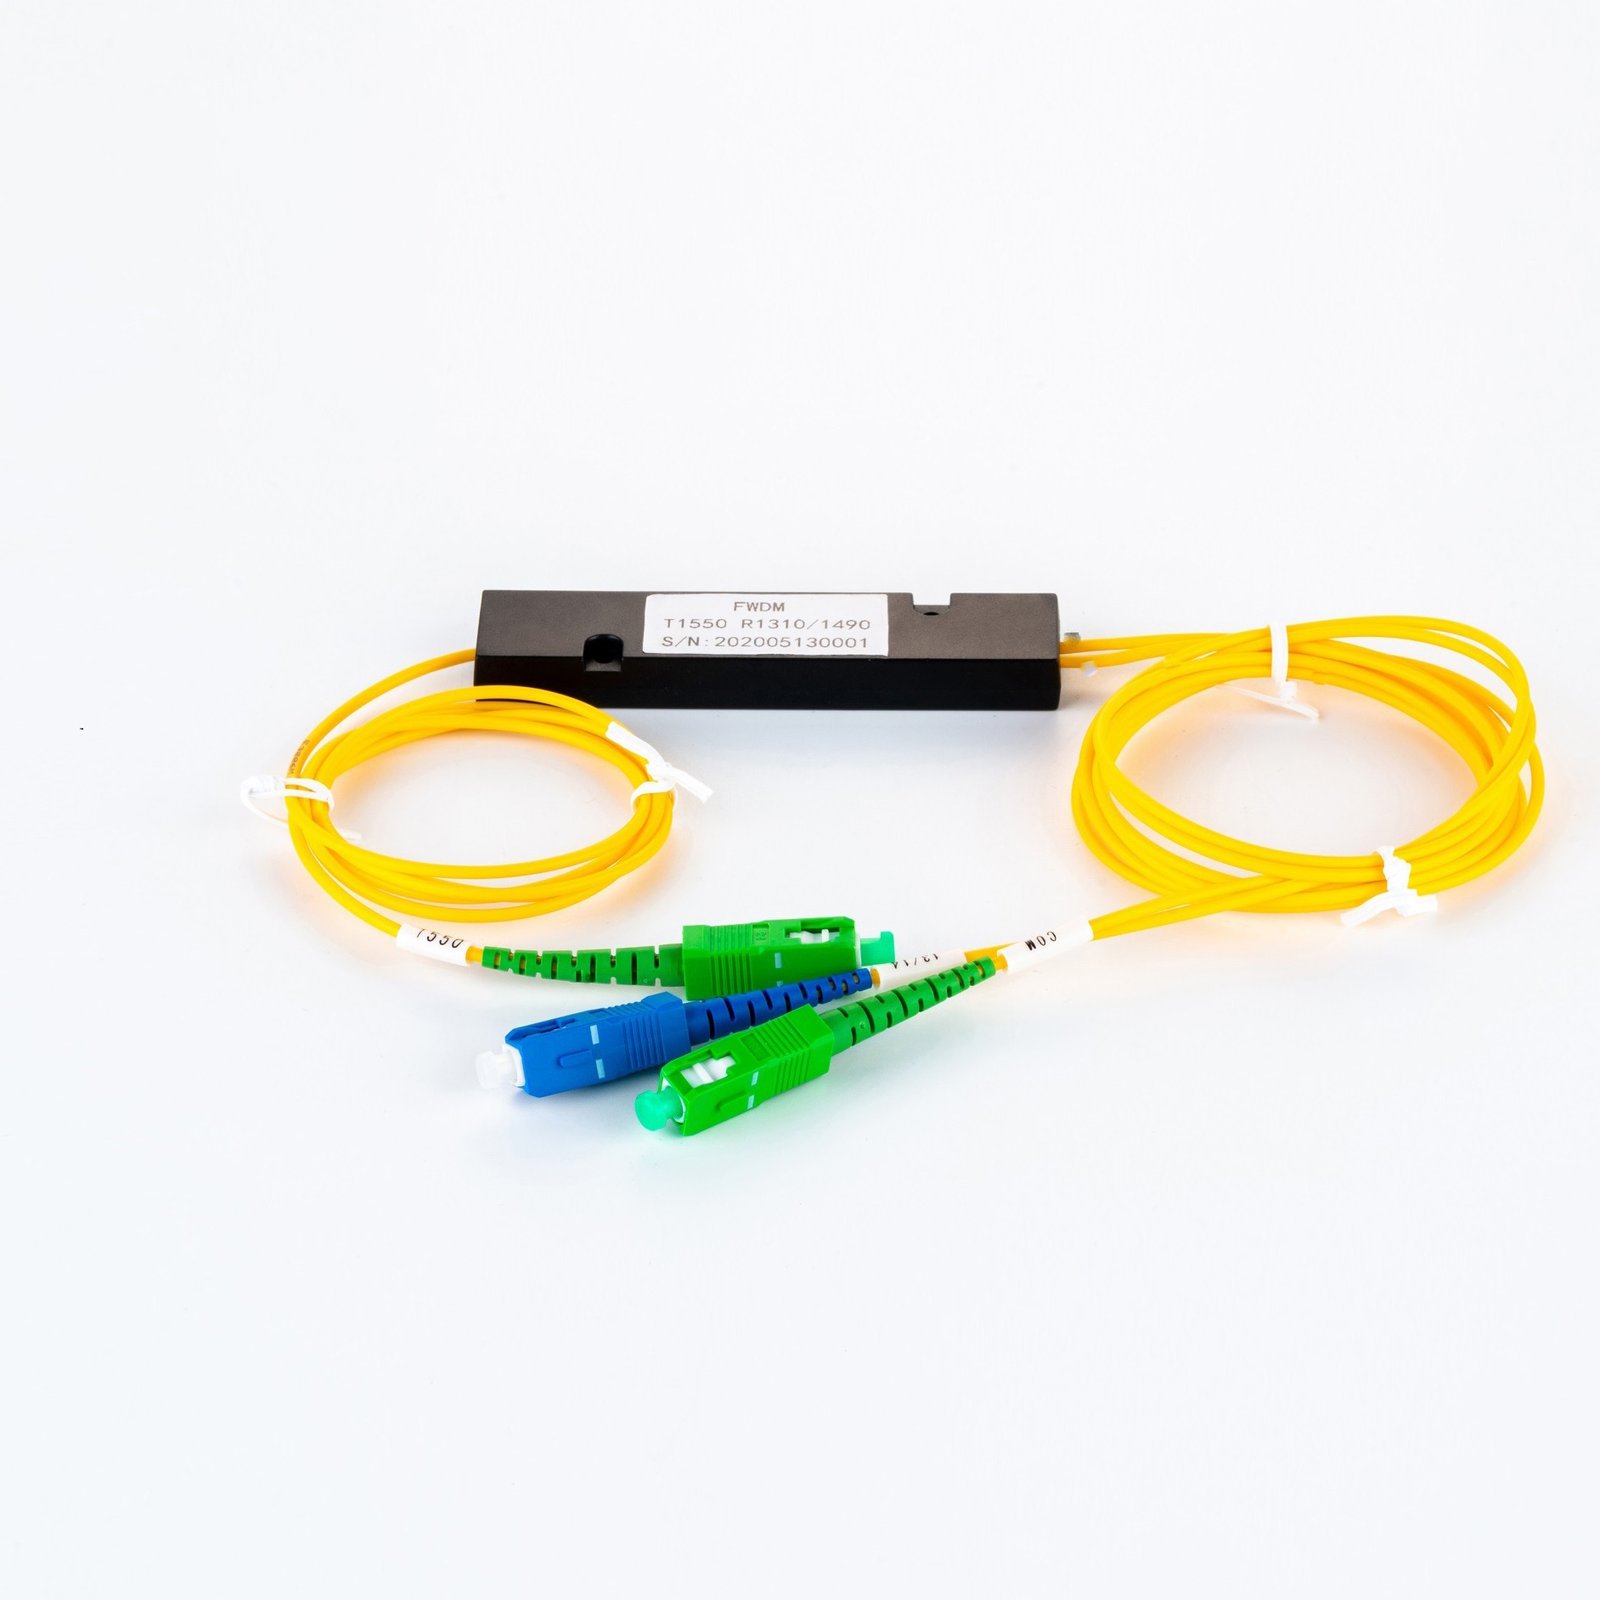 Wholesale Dealers of Dwdm Fibre - 3 ports fiber optic FTB coupler ABS box type optical fiber FWDM – Qualfiber